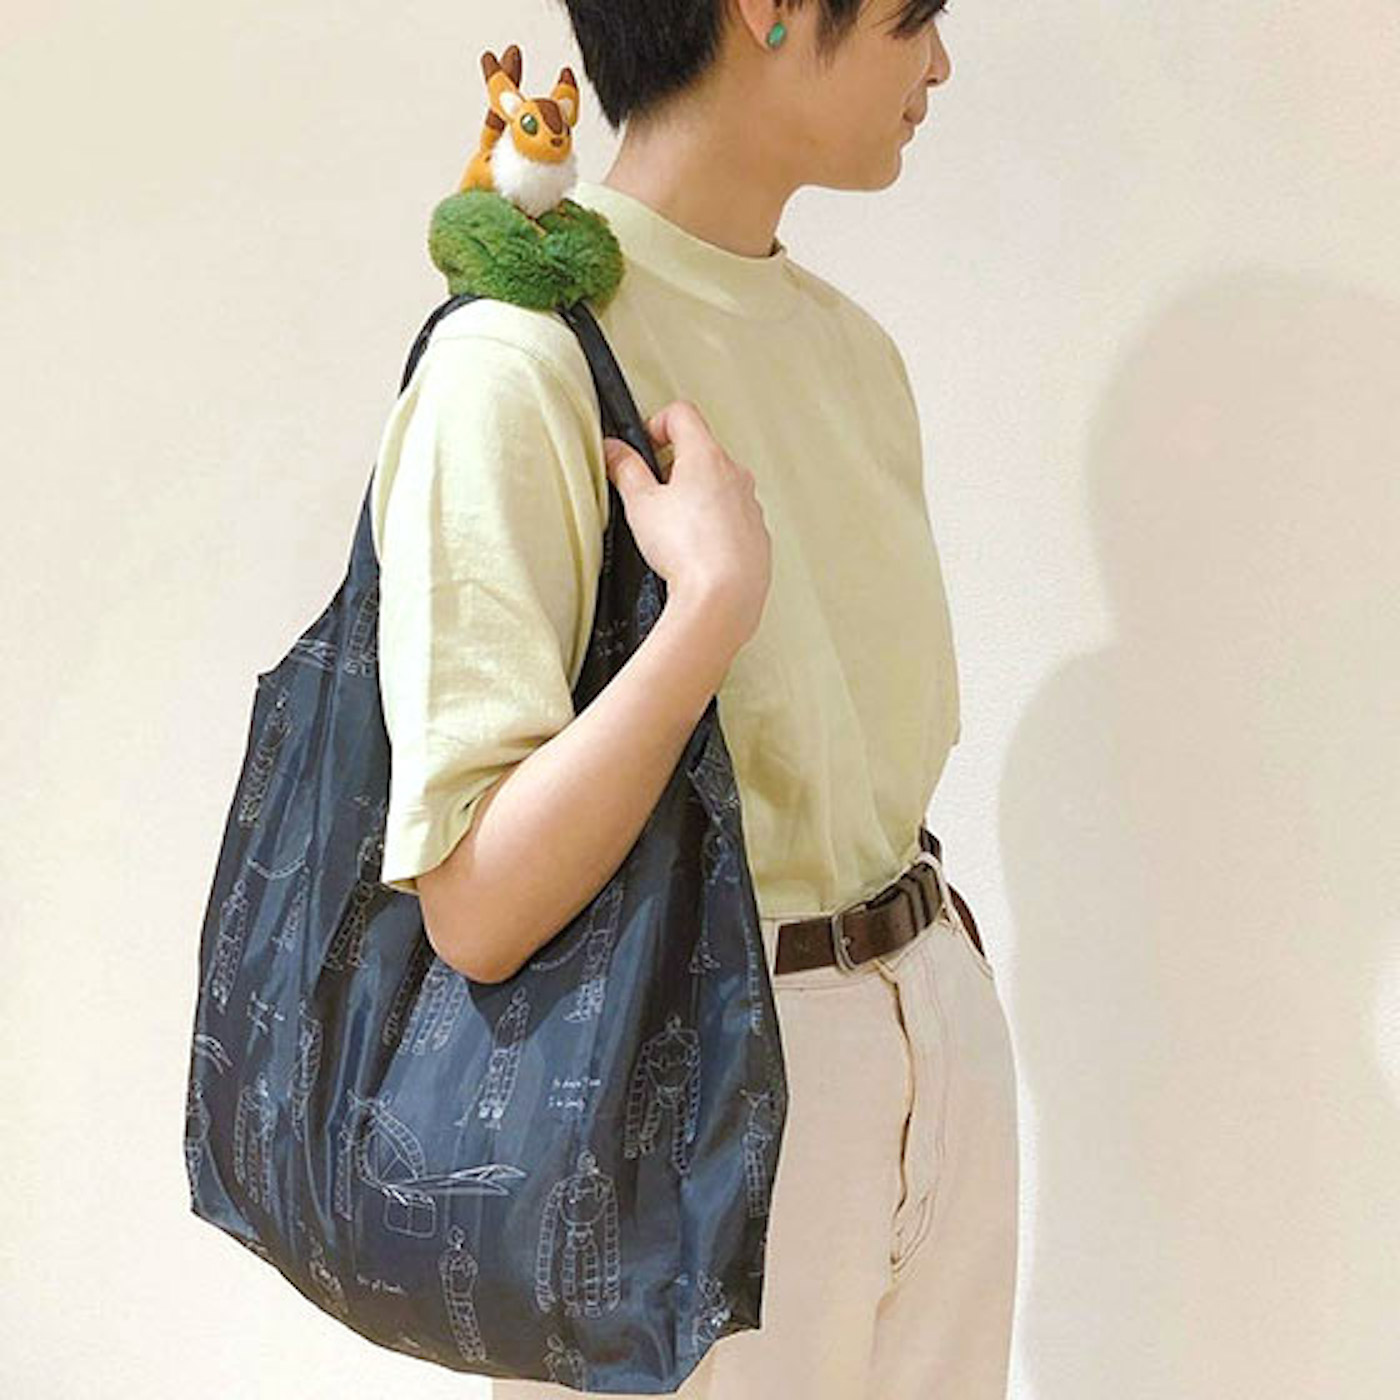 Le Studio Ghibli crée des peluches qui se transforment en sacs réutilisables